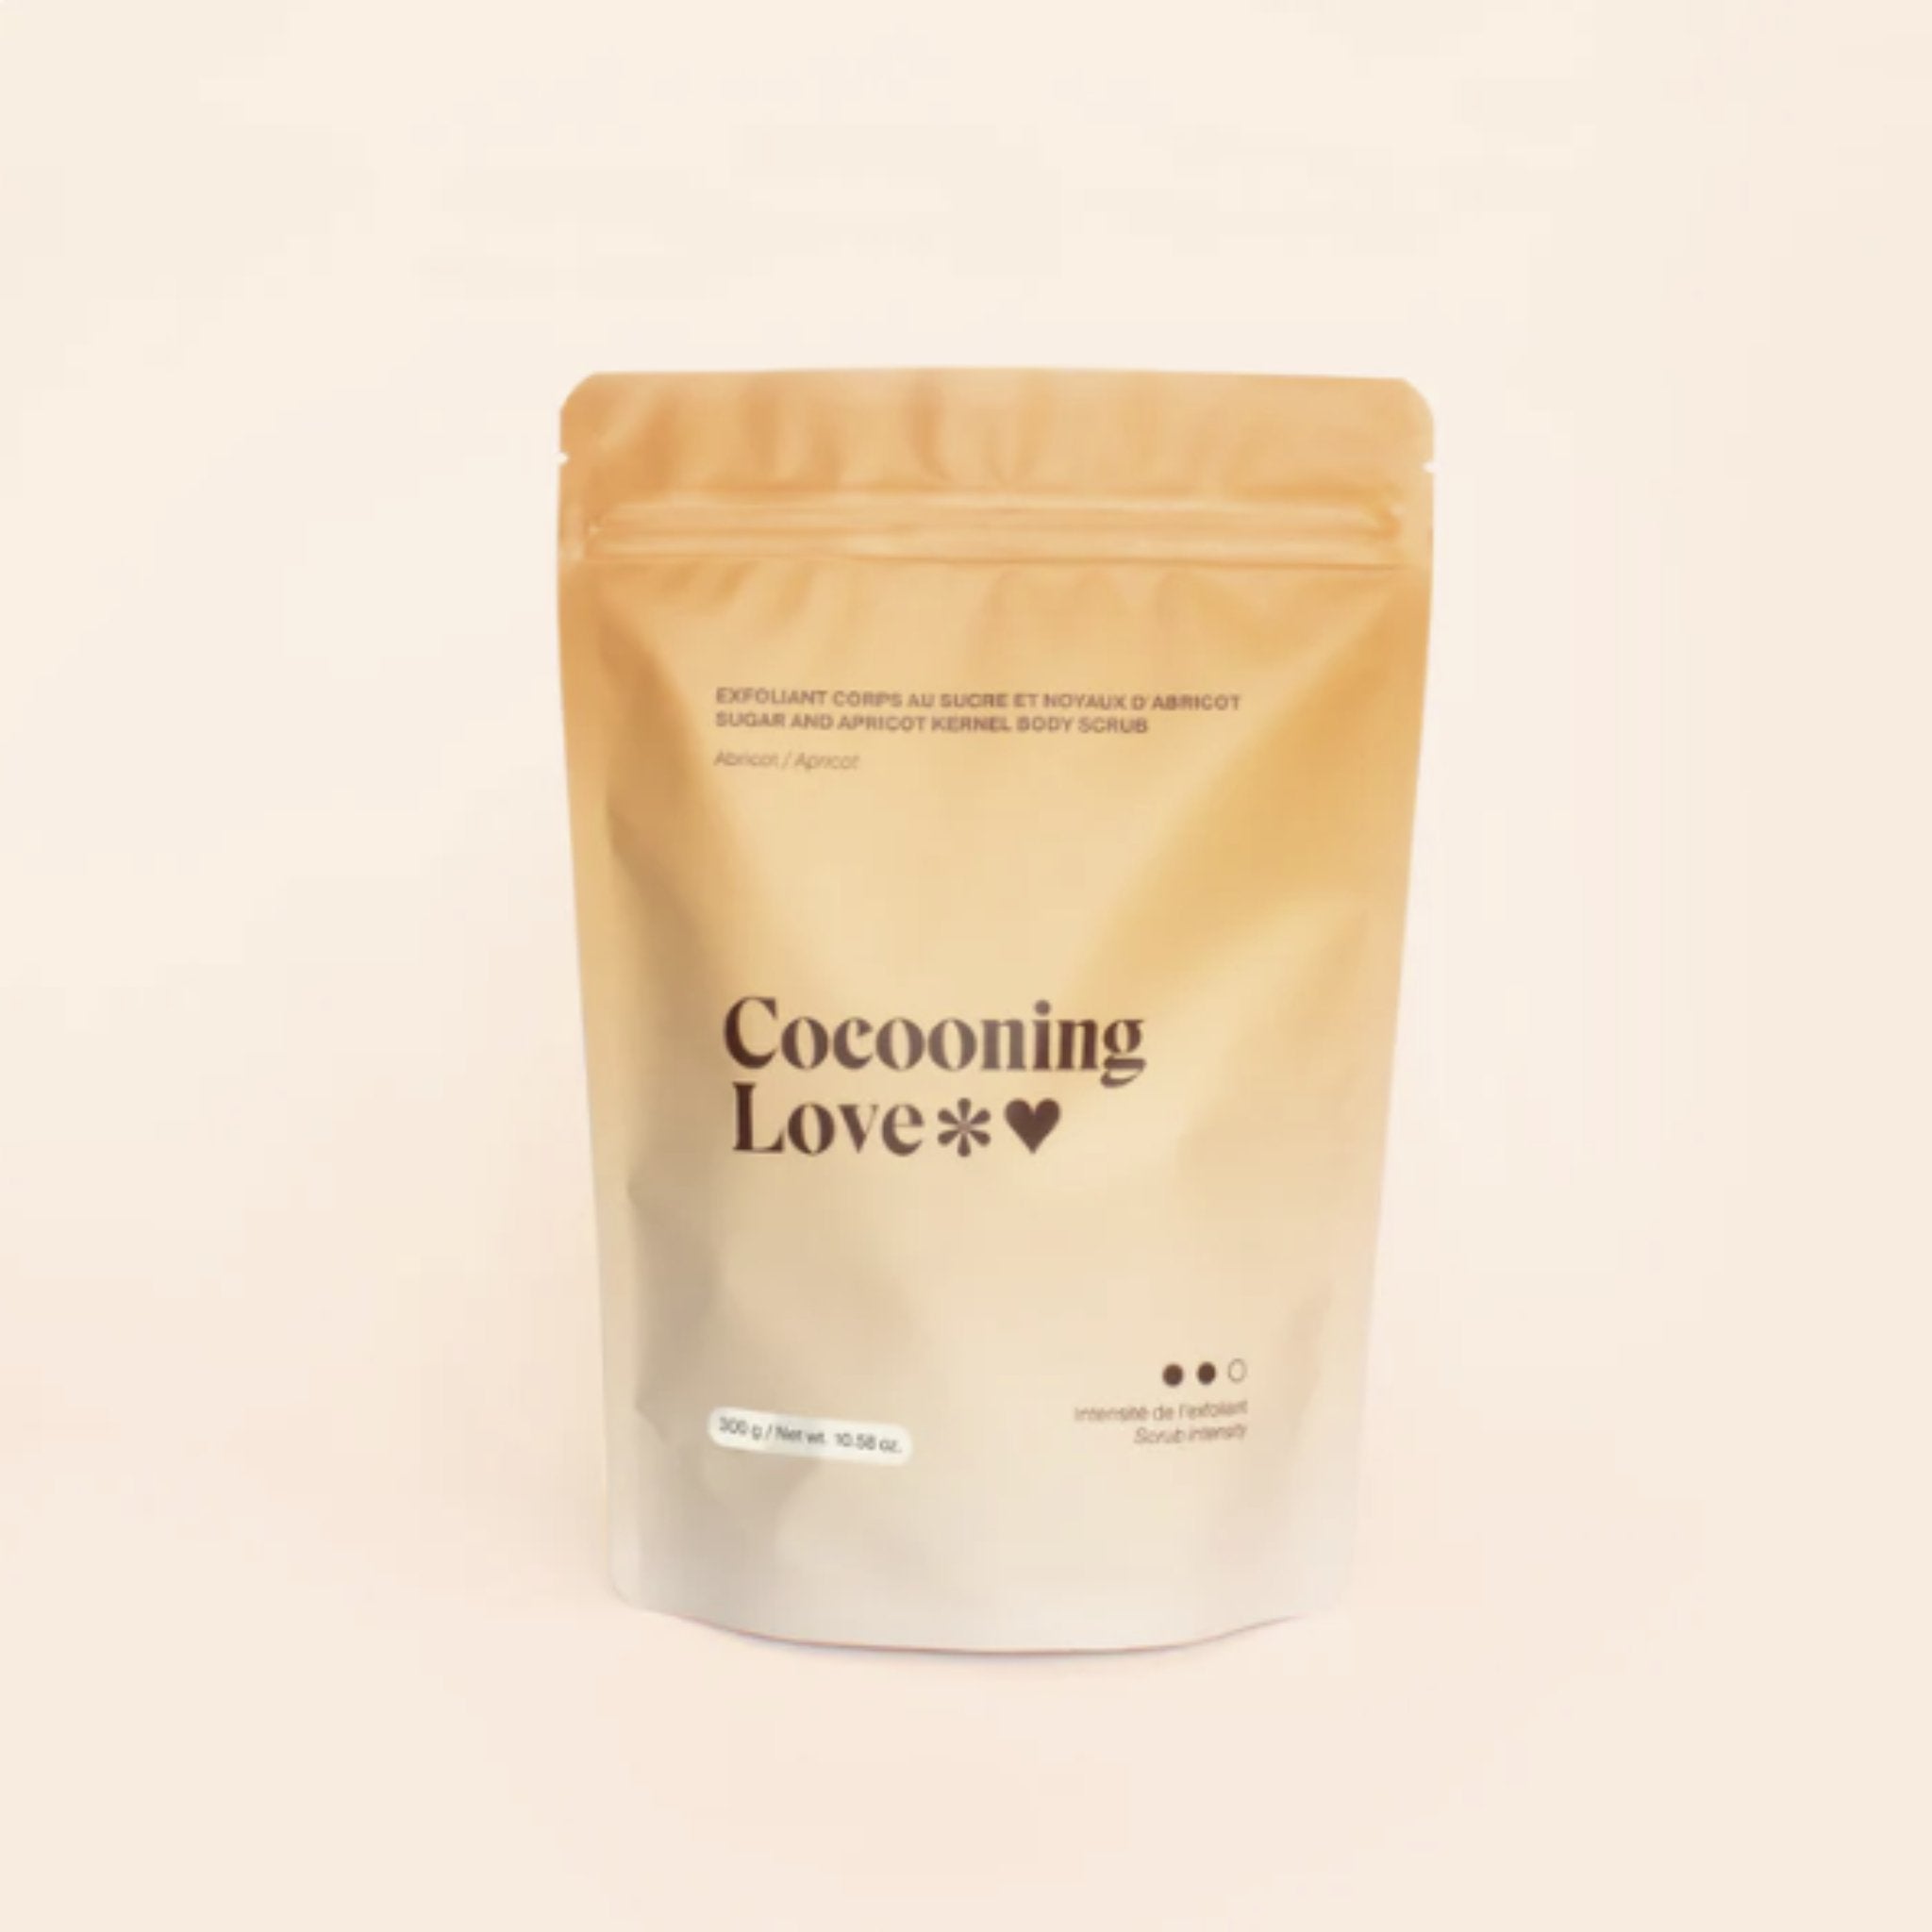 Cocooning Love. Exfoliant Corps au Sucre - Abricot - 300 gr - Concept C. Shop